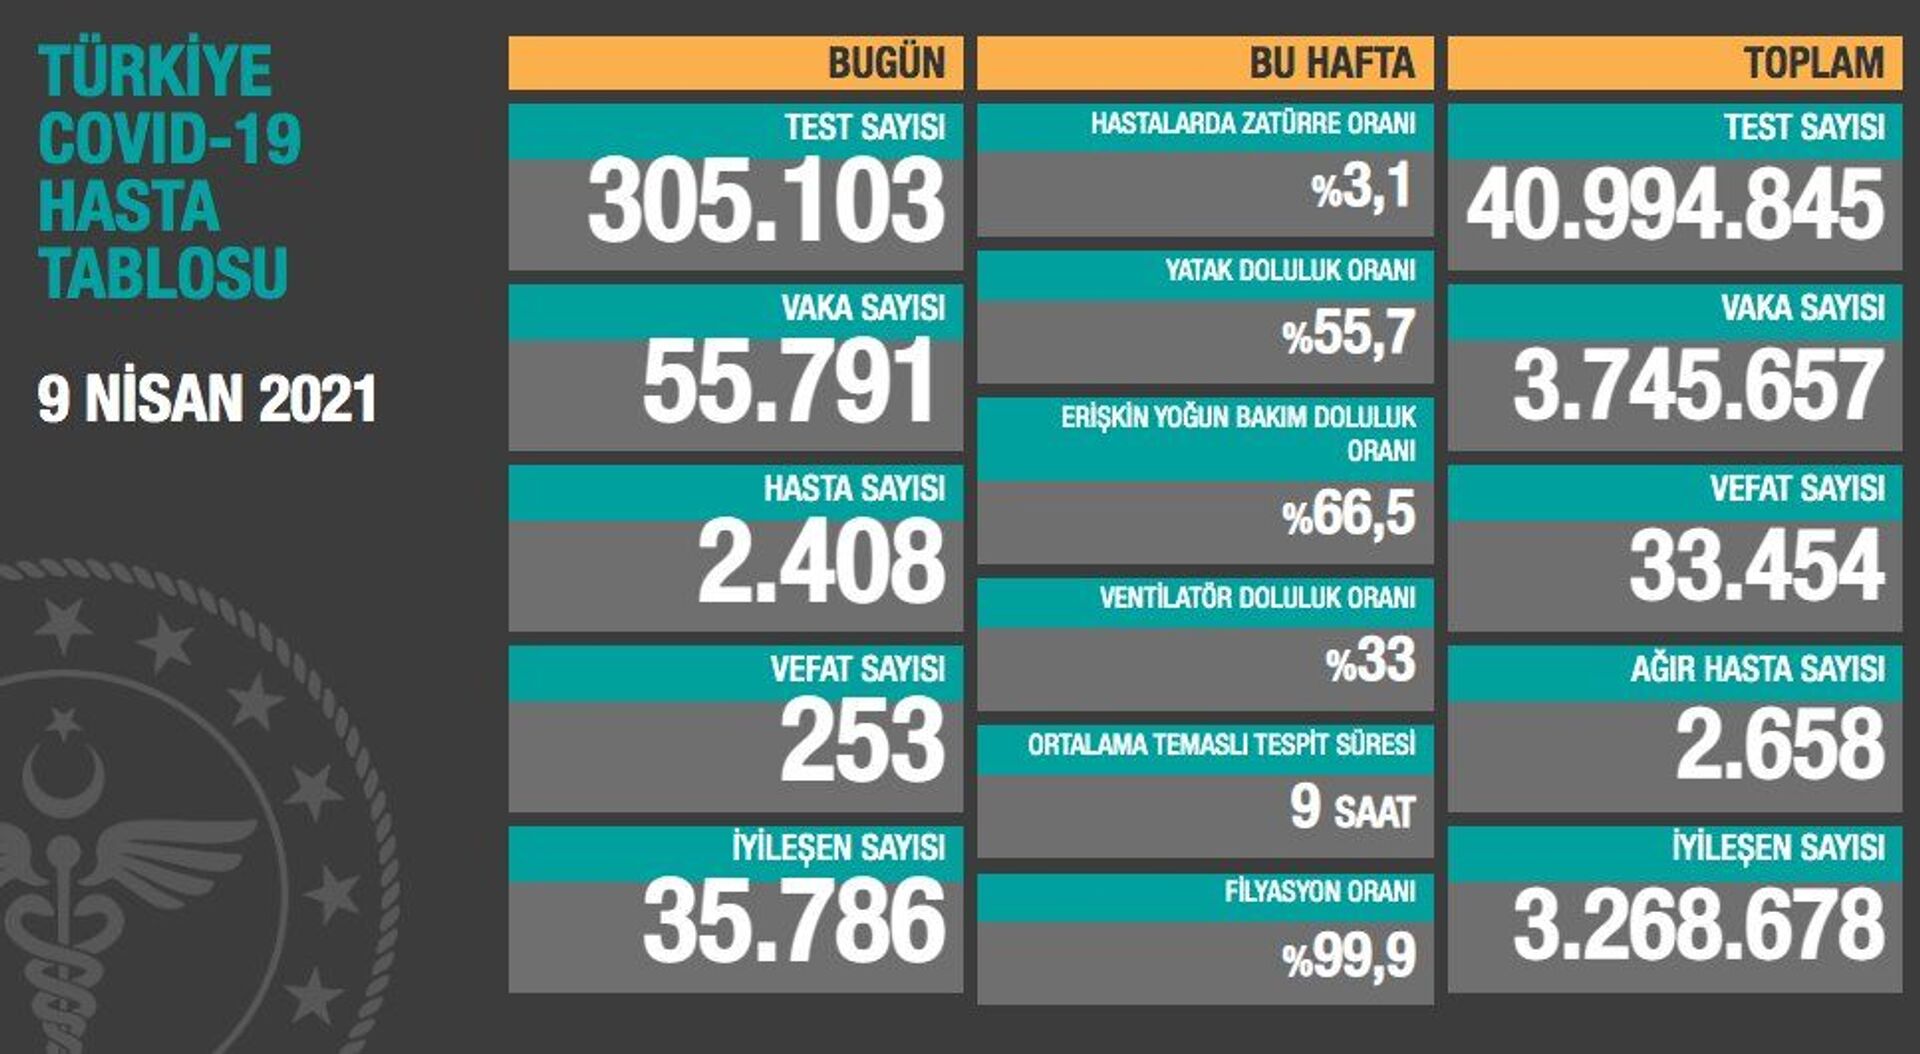 Türkiye'de son 24 saatte koronavirüsten 253 kişi hayatını kaybetti, 55 bin 791 kişinin testi pozitif çıktı - Sputnik Türkiye, 1920, 09.04.2021